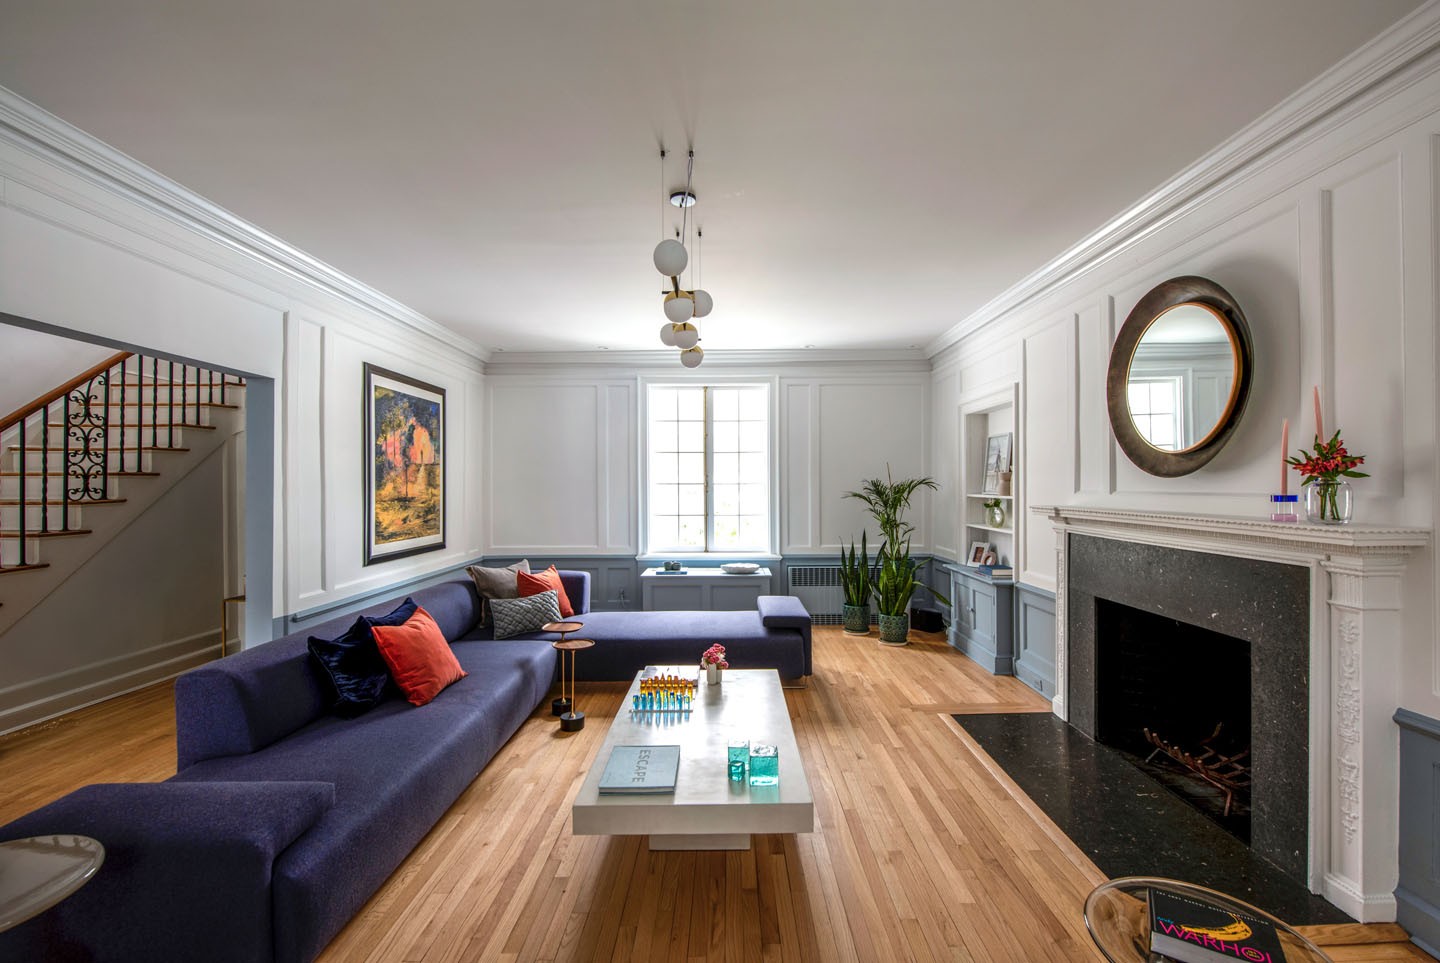 Décor do dia: sala de estar clássica com design contemporâneo (Foto: Romulo Fialdini)